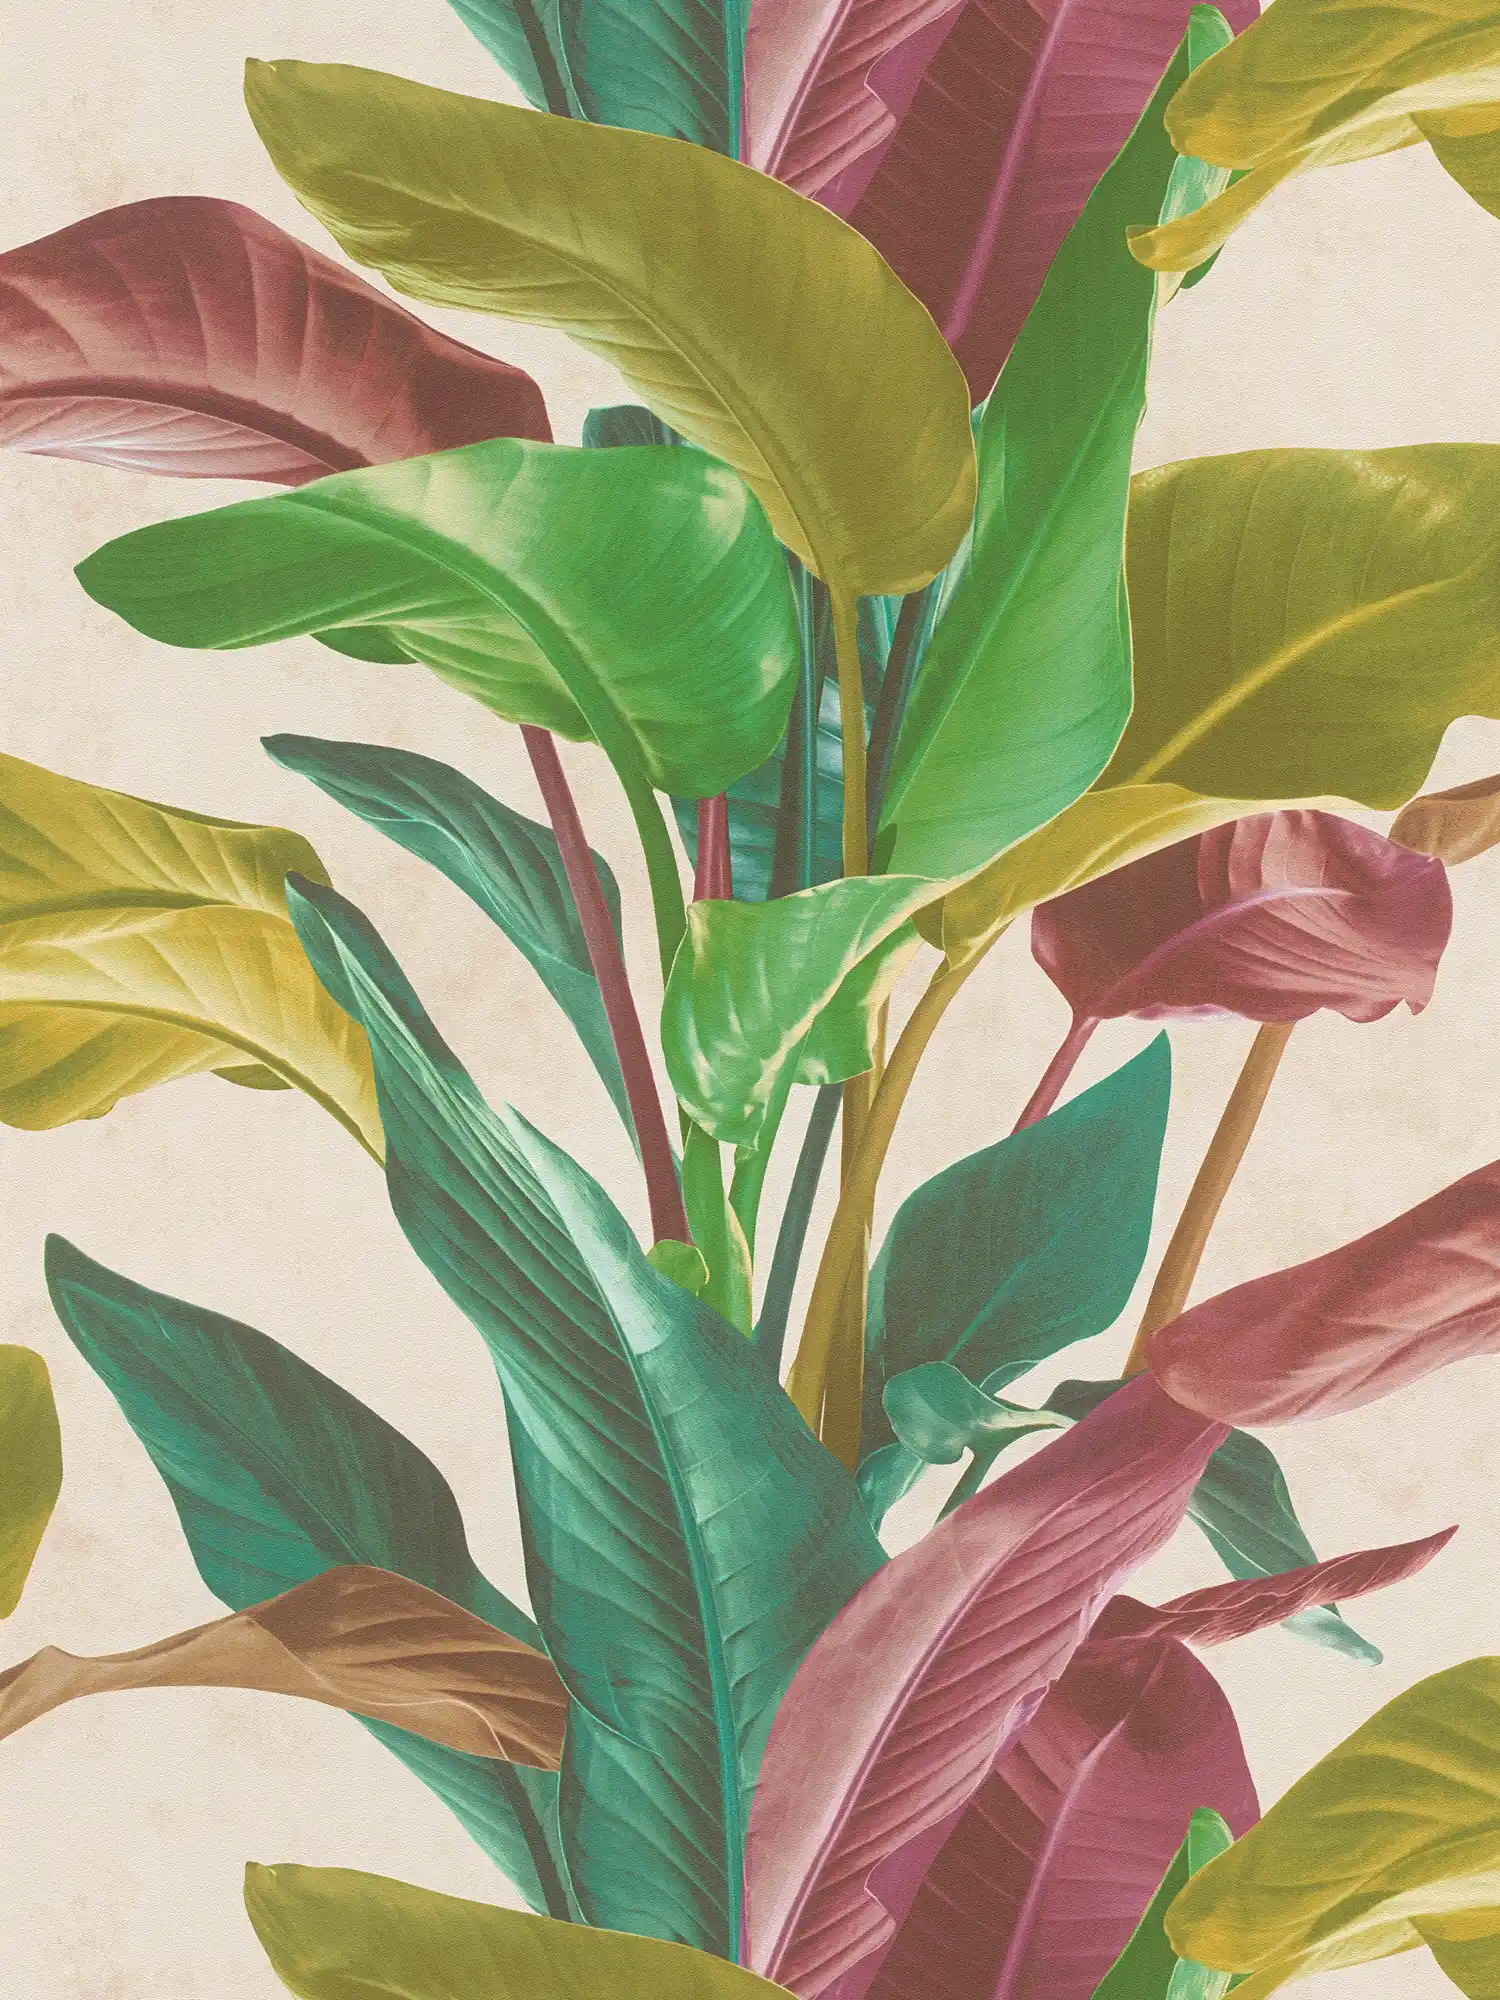         Tapete mit Blätter-Design in leuchtenden Farben – Bunt, Creme, Grün
    